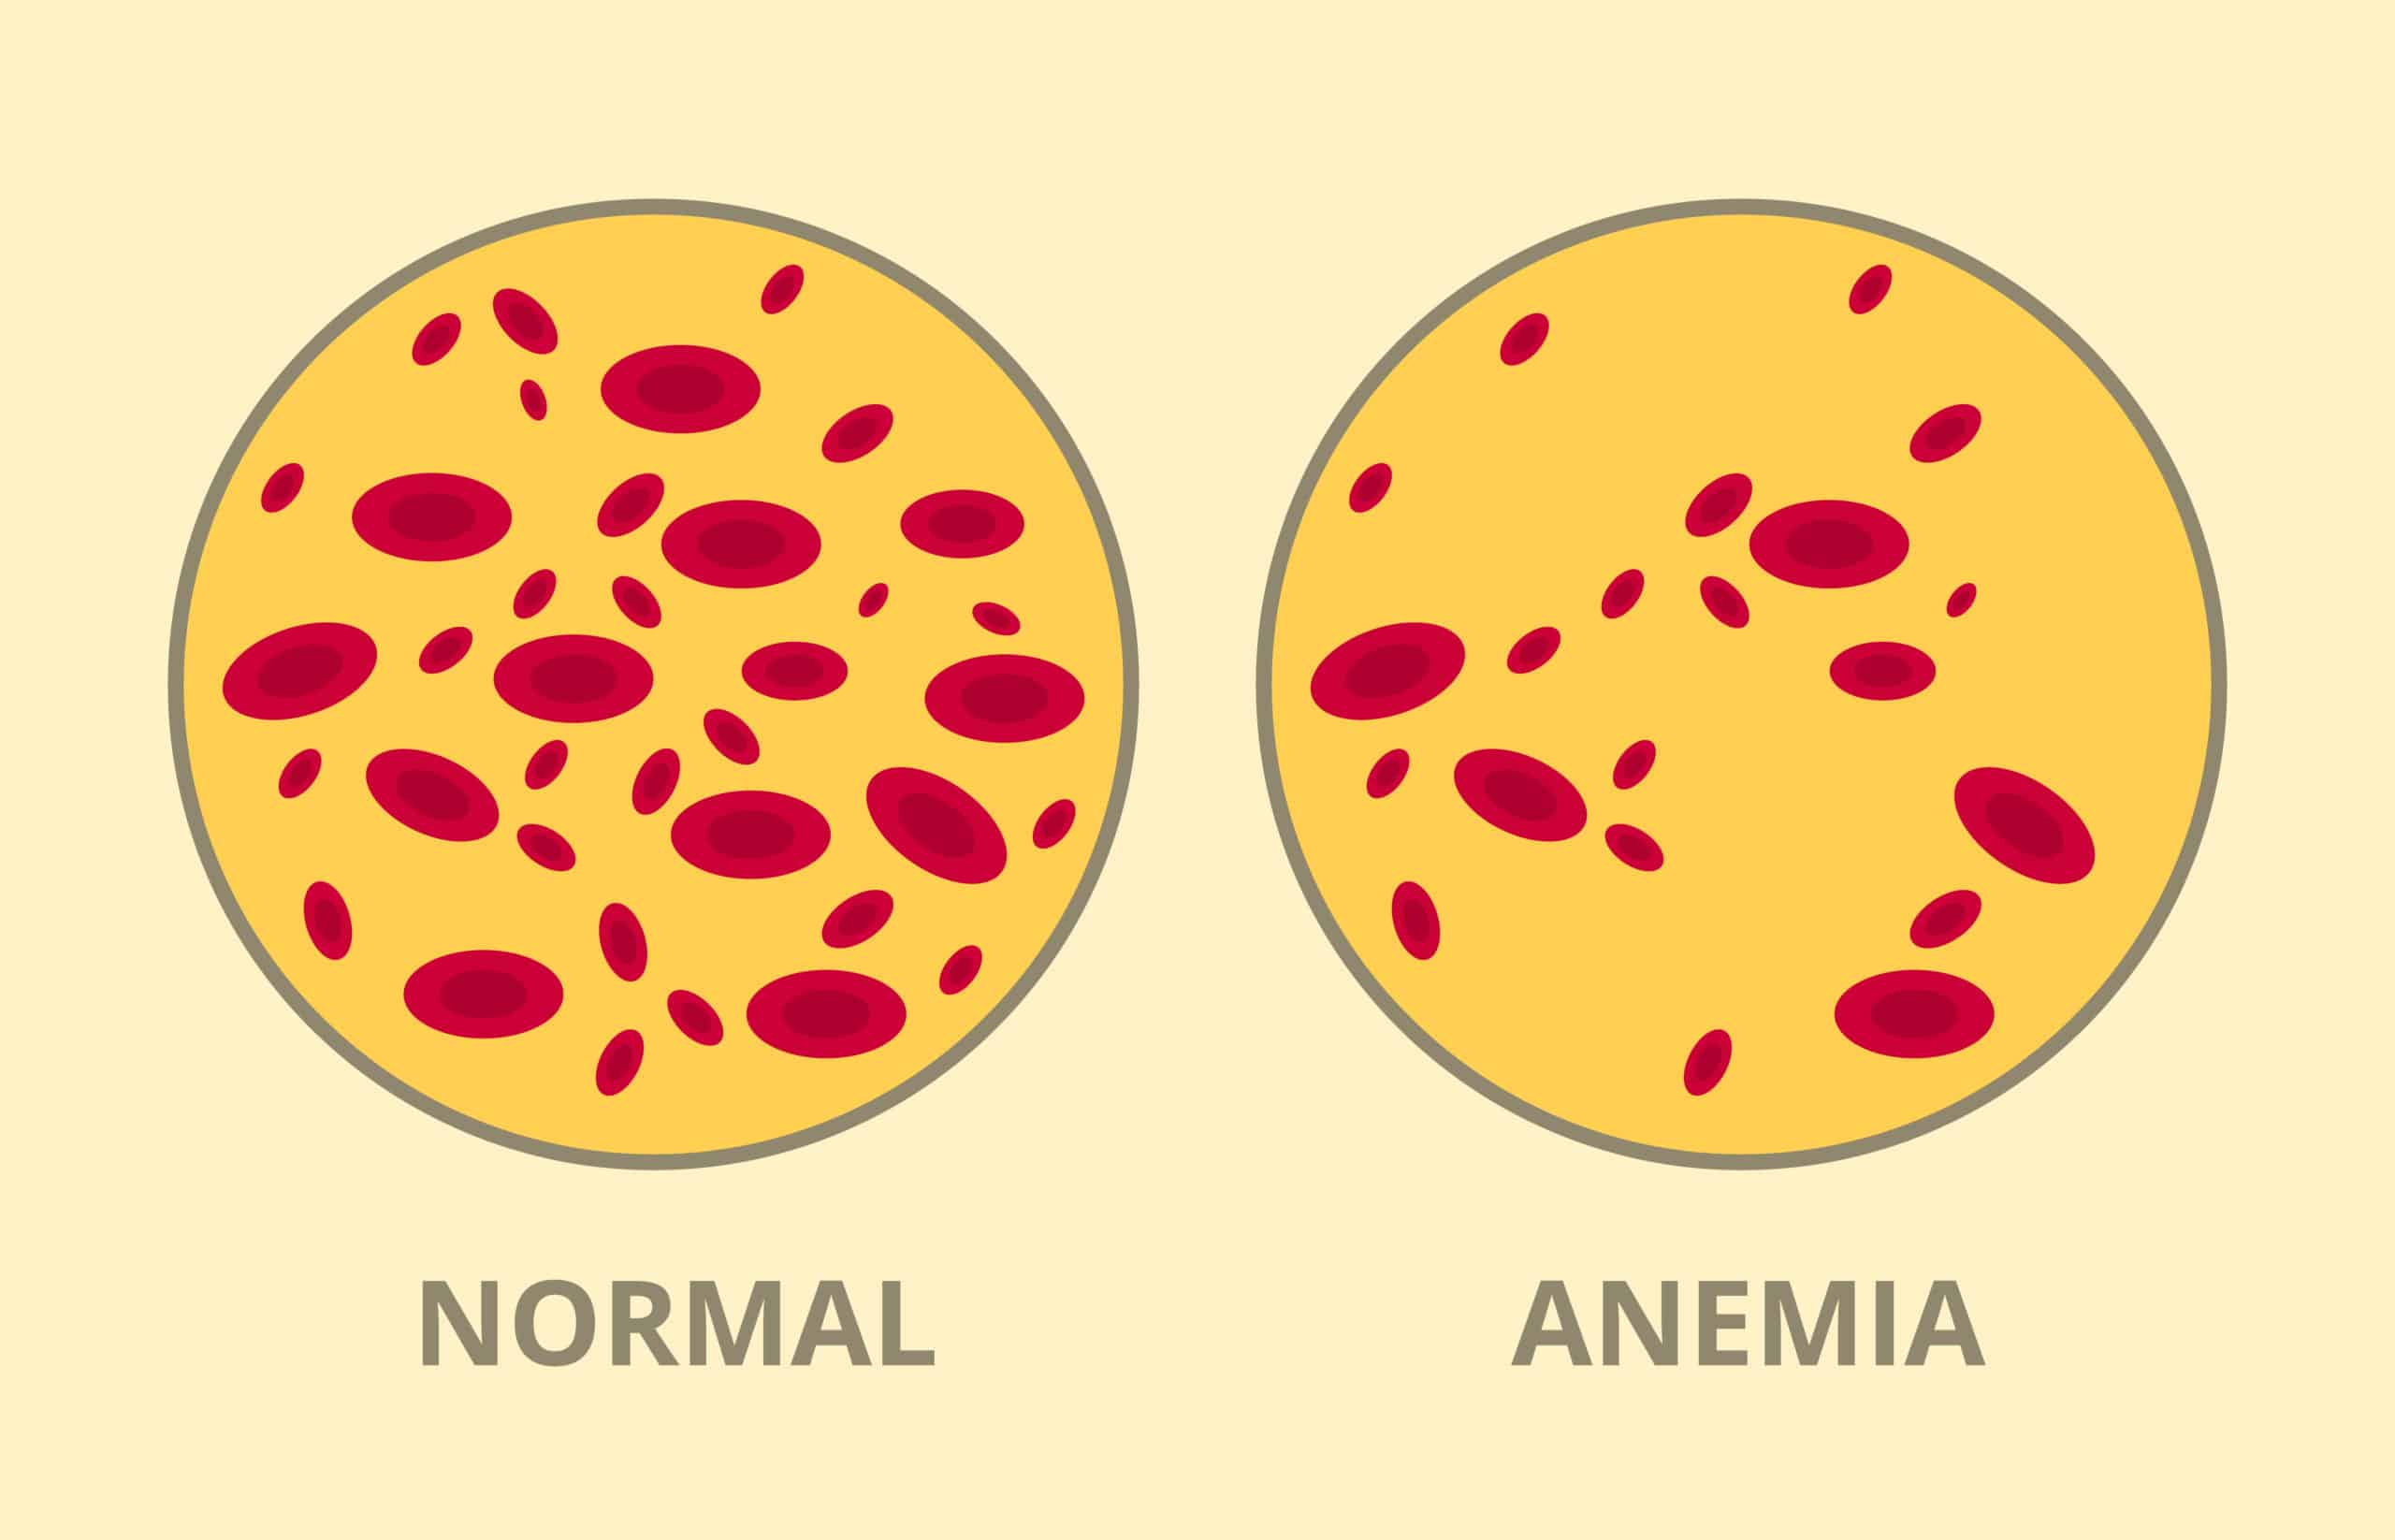 Анемия и эритроциты в крови. Анемия рисунок. Анемия эритроциты. Эритроциты в крови анемия.